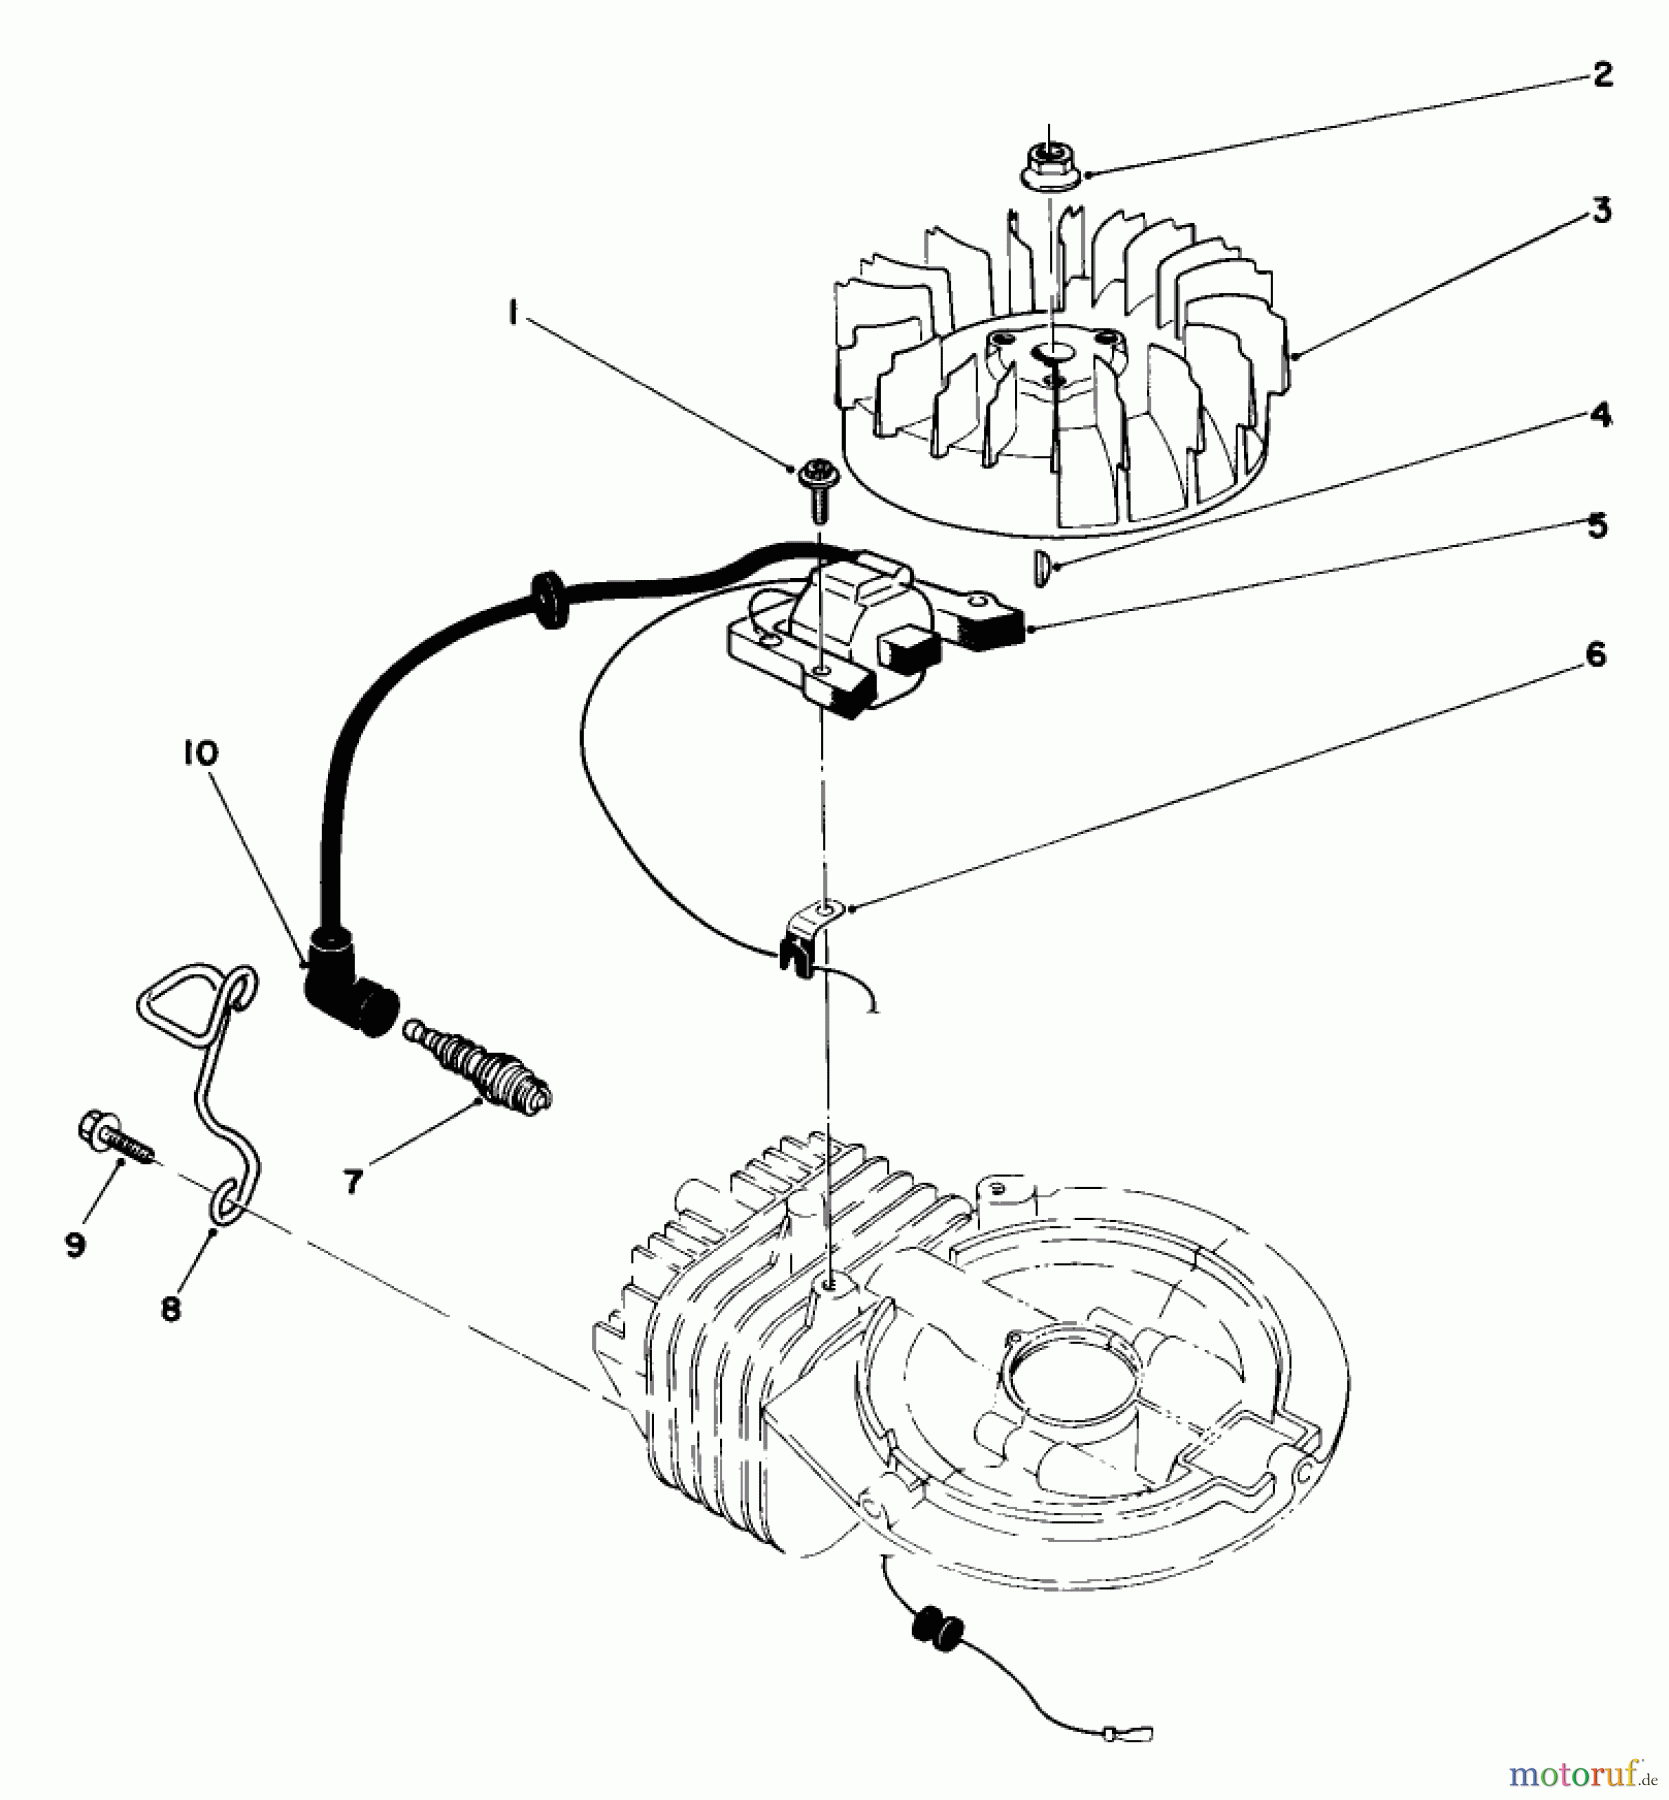  Toro Neu Mowers, Walk-Behind Seite 2 22035 - Toro Lawnmower, 1987 (7000001-7999999) ENGINE ASSEMBLY MODEL NO. 47PG6 #2